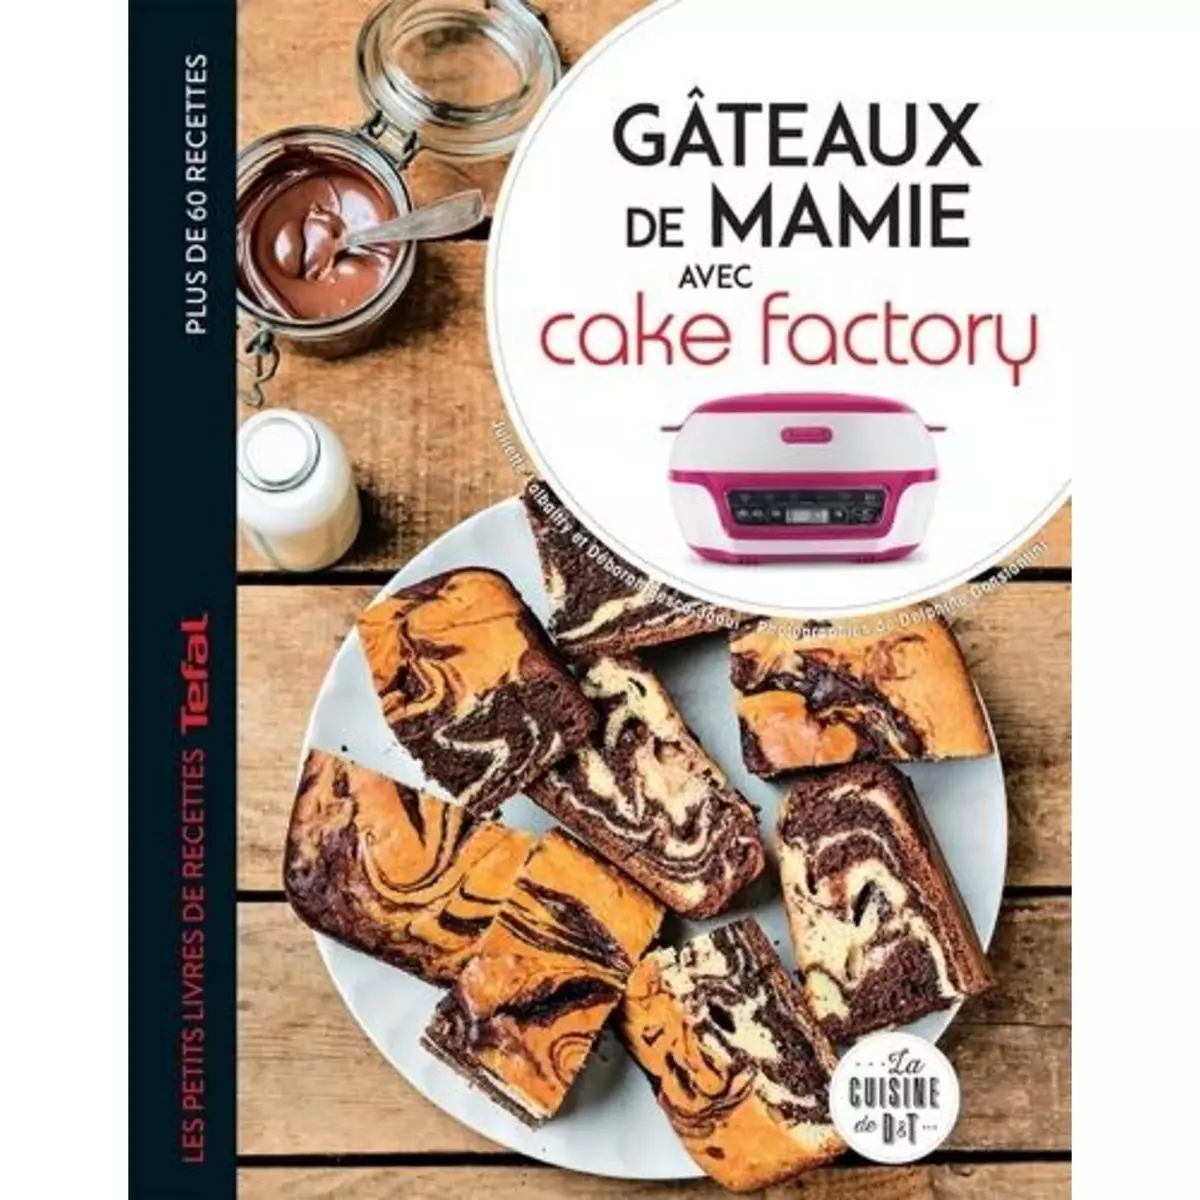  GATEAUX DE MAMIE AVEC CAKE FACTORY, Lalbaltry Juliette